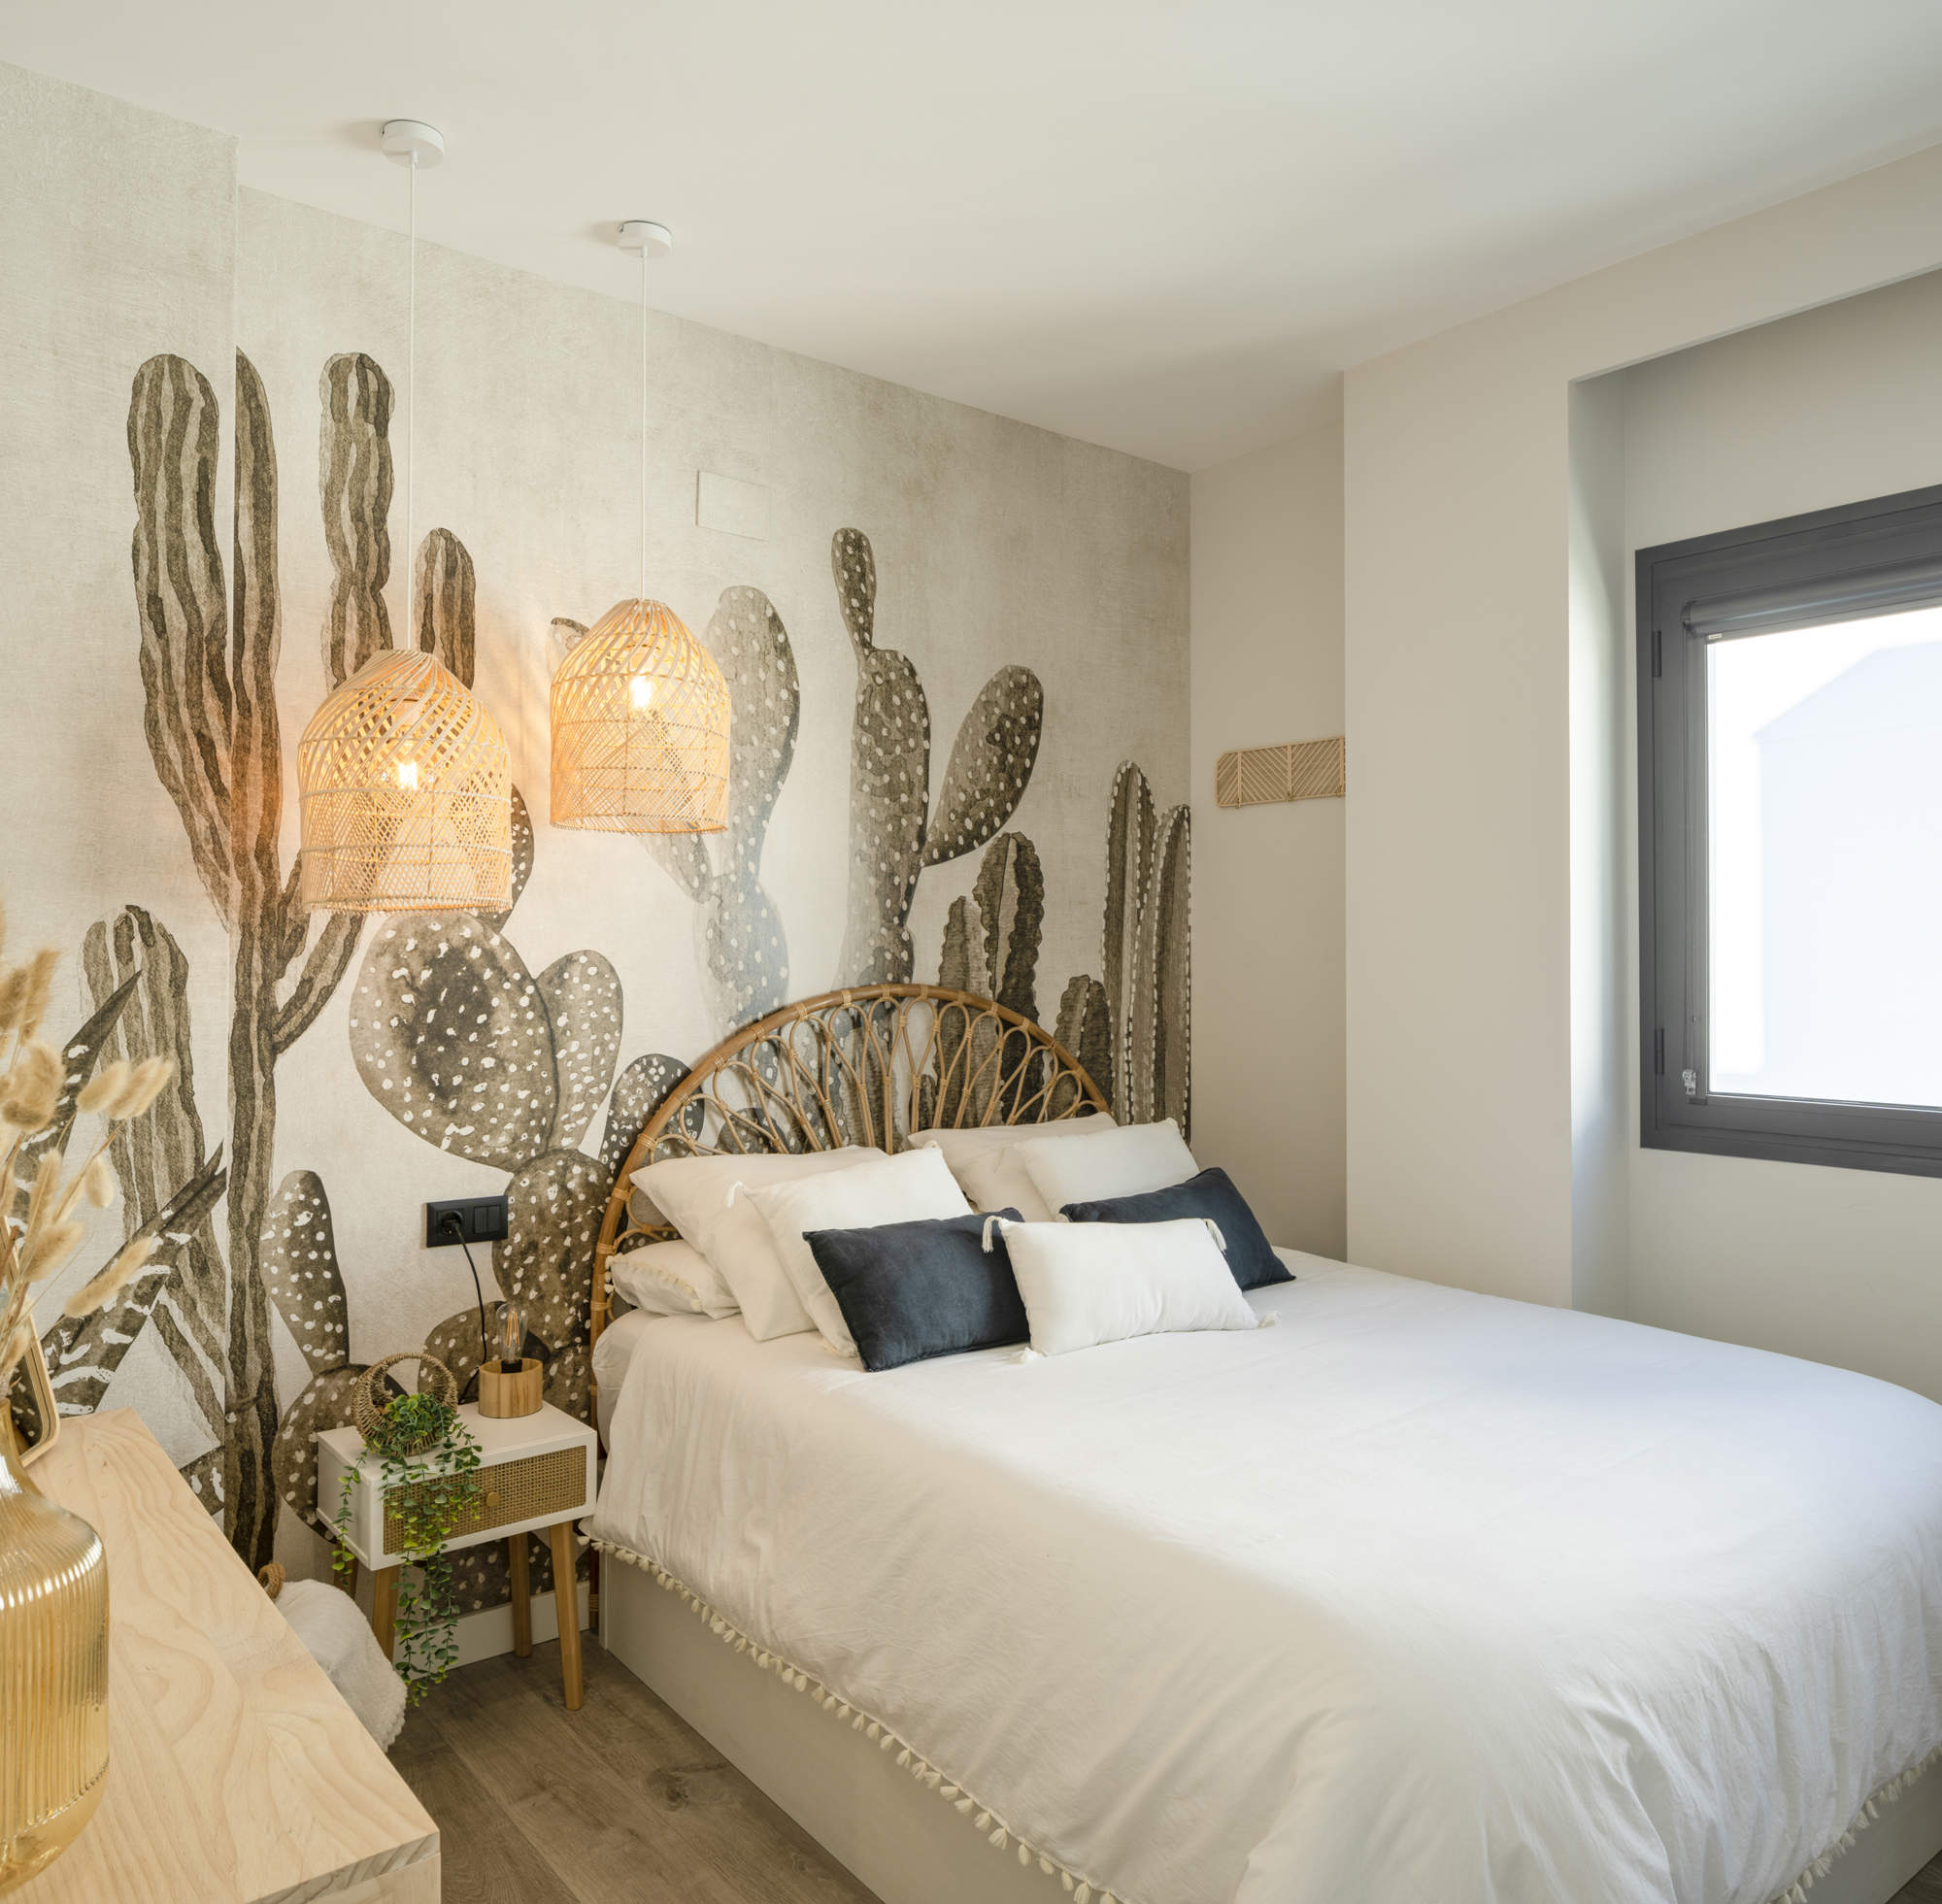 Dormitorio juvenil con cabecero y lámparas rústicas, colcha con borlas de flecos, decoración de plantas en la mesilla y en el papel pintado de cactus.